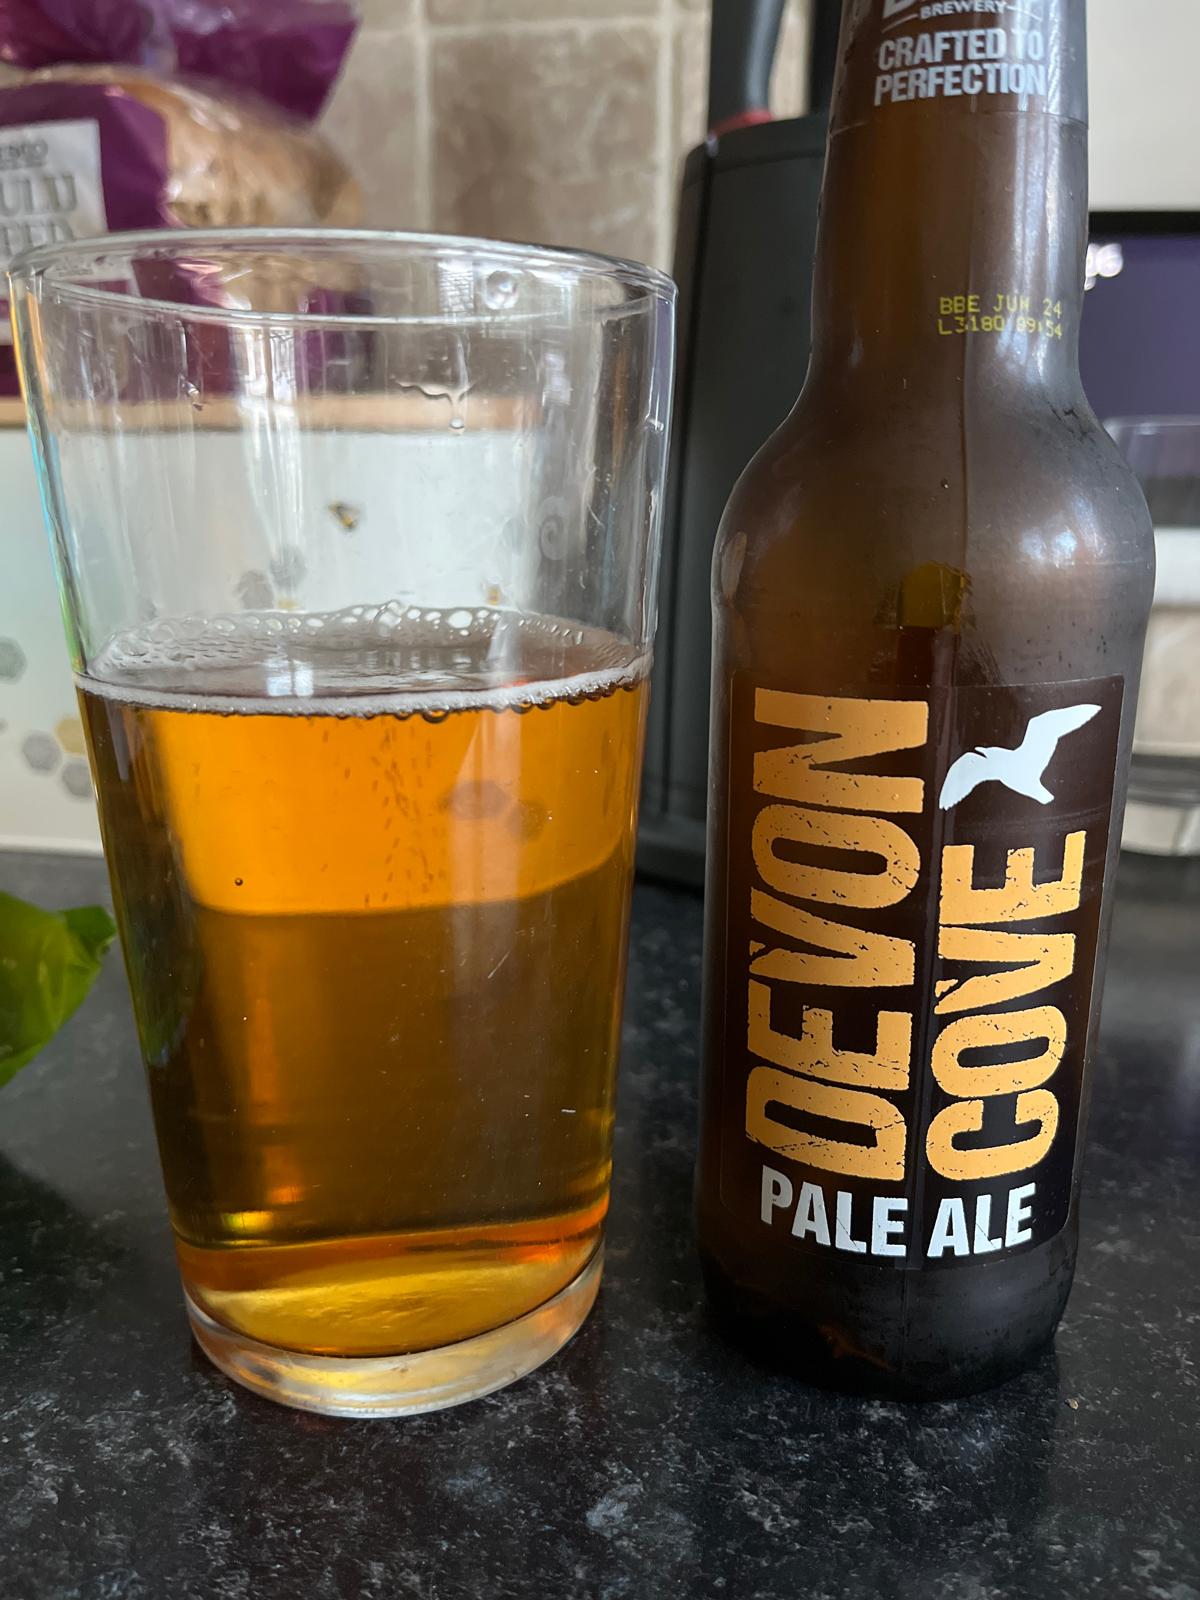 Devon Cove Pale Ale